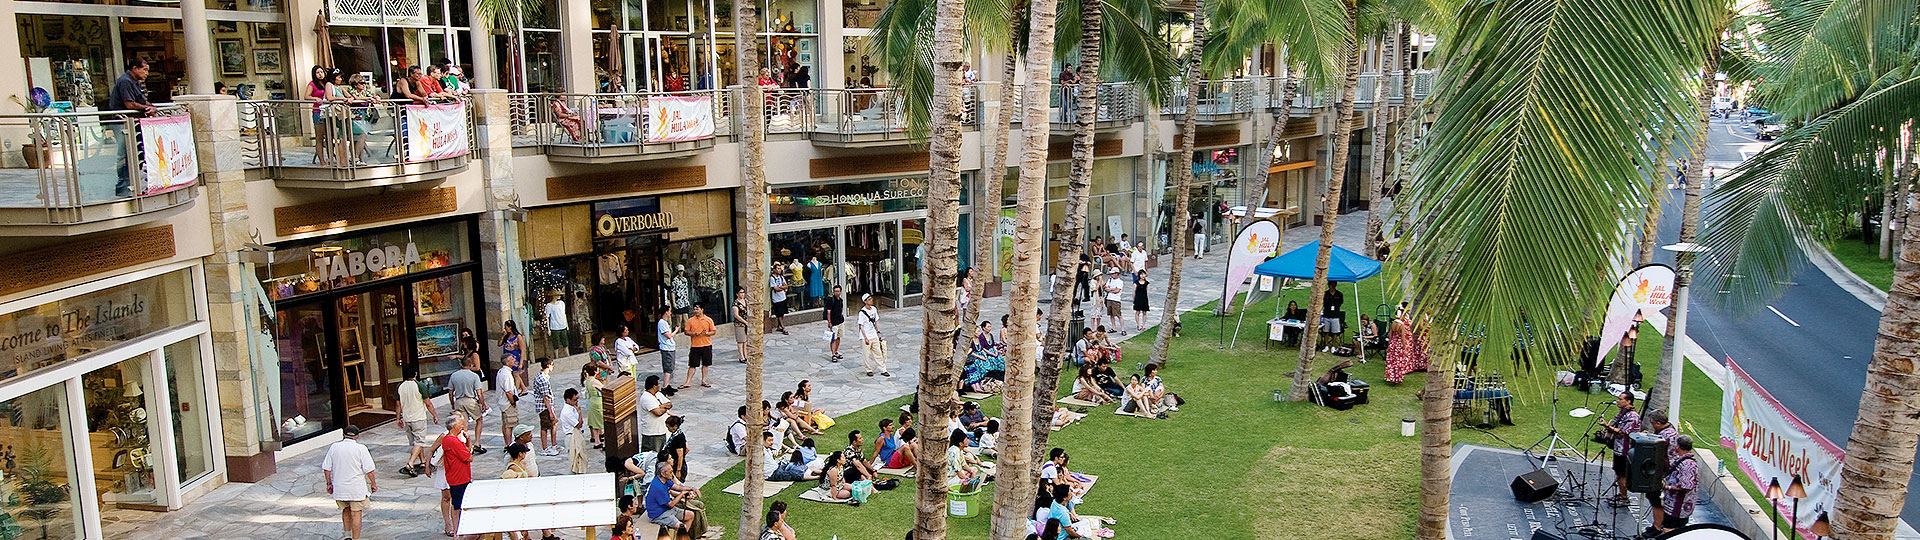 Honolulu Shopping, Hilton Hawaiian Village, Shops in Waikiki